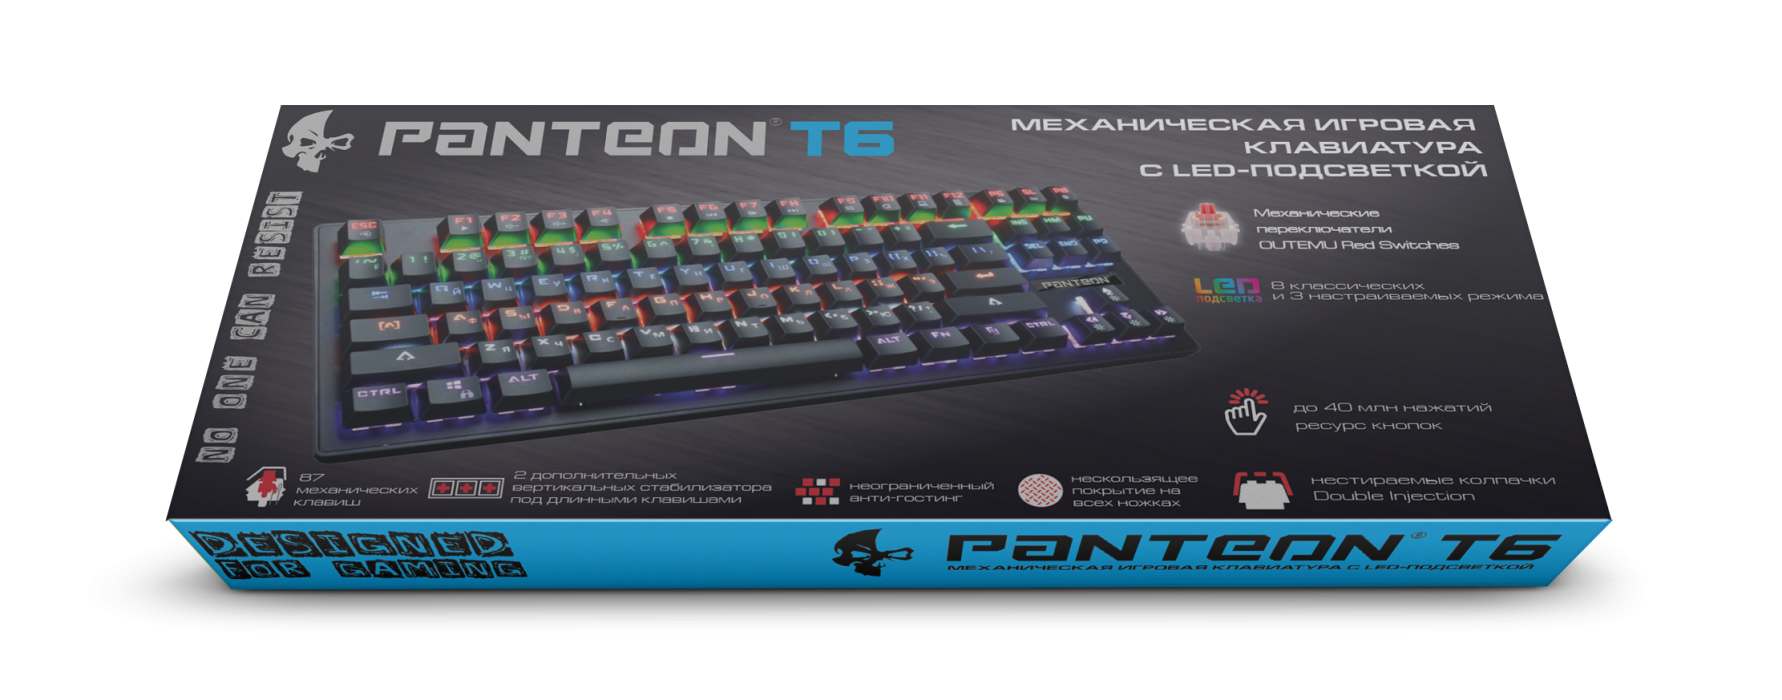 Игровая механическая клавиатура с LED-подсветкой PANTEON Т63